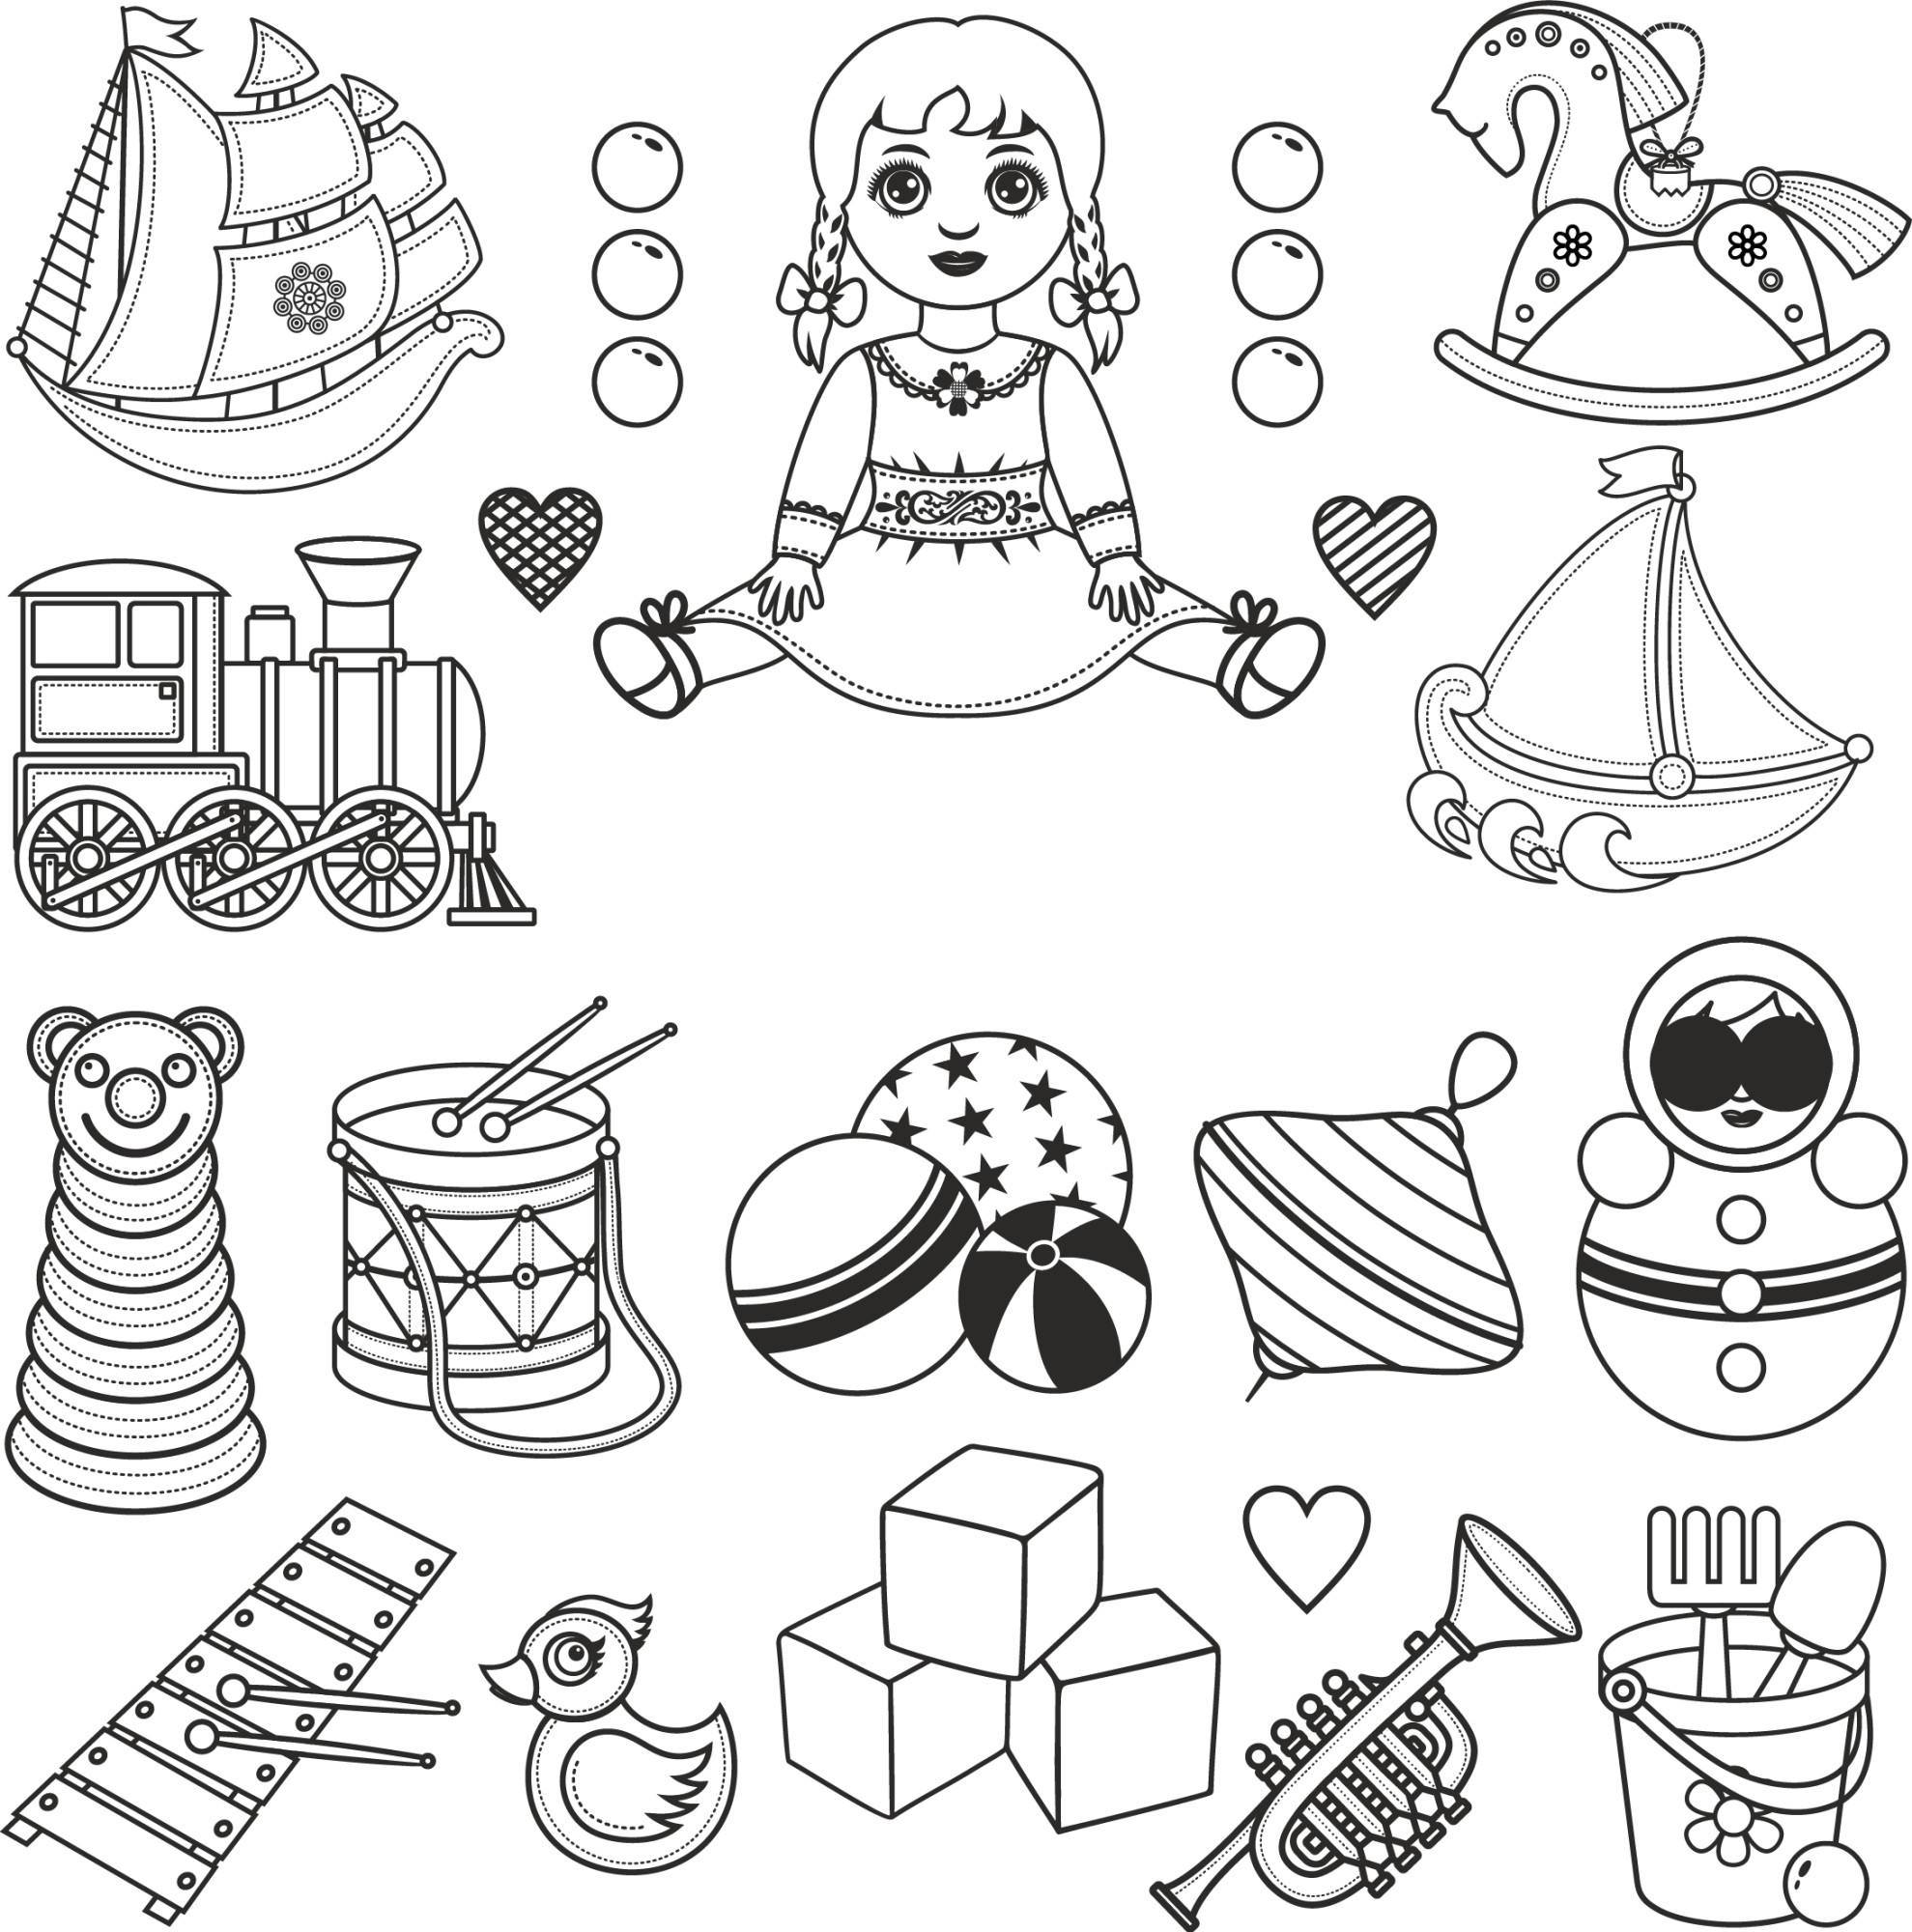 Раскраска для детей: детские игрушки: куклы, кубики, кораблики, юла, матрешка, неваляшка, пирамидка, уточка